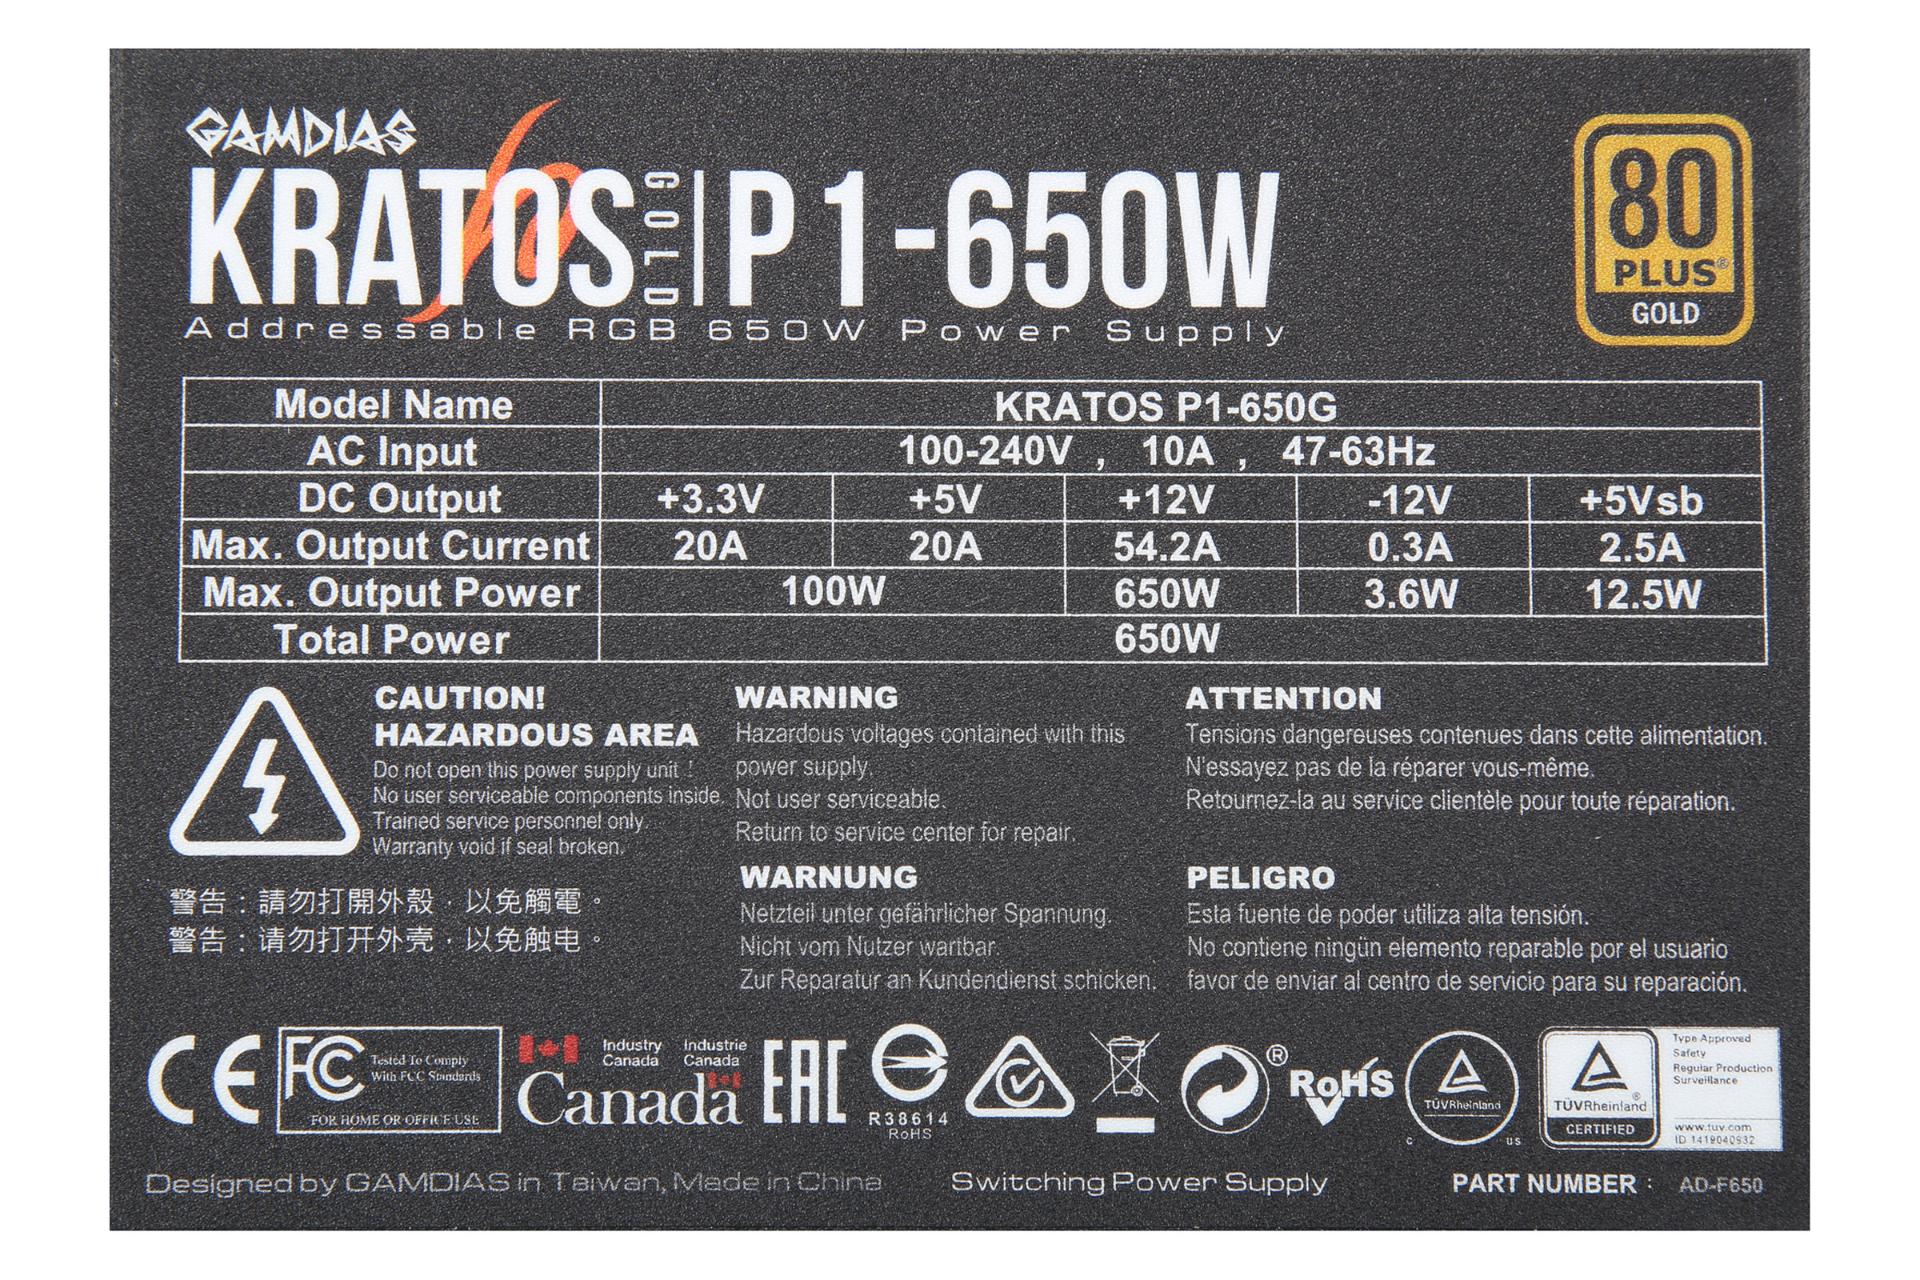 برچسب توضیحات پاور کامپیوتر گیم دیاس KRATOS P1-650G با توان 650 وات